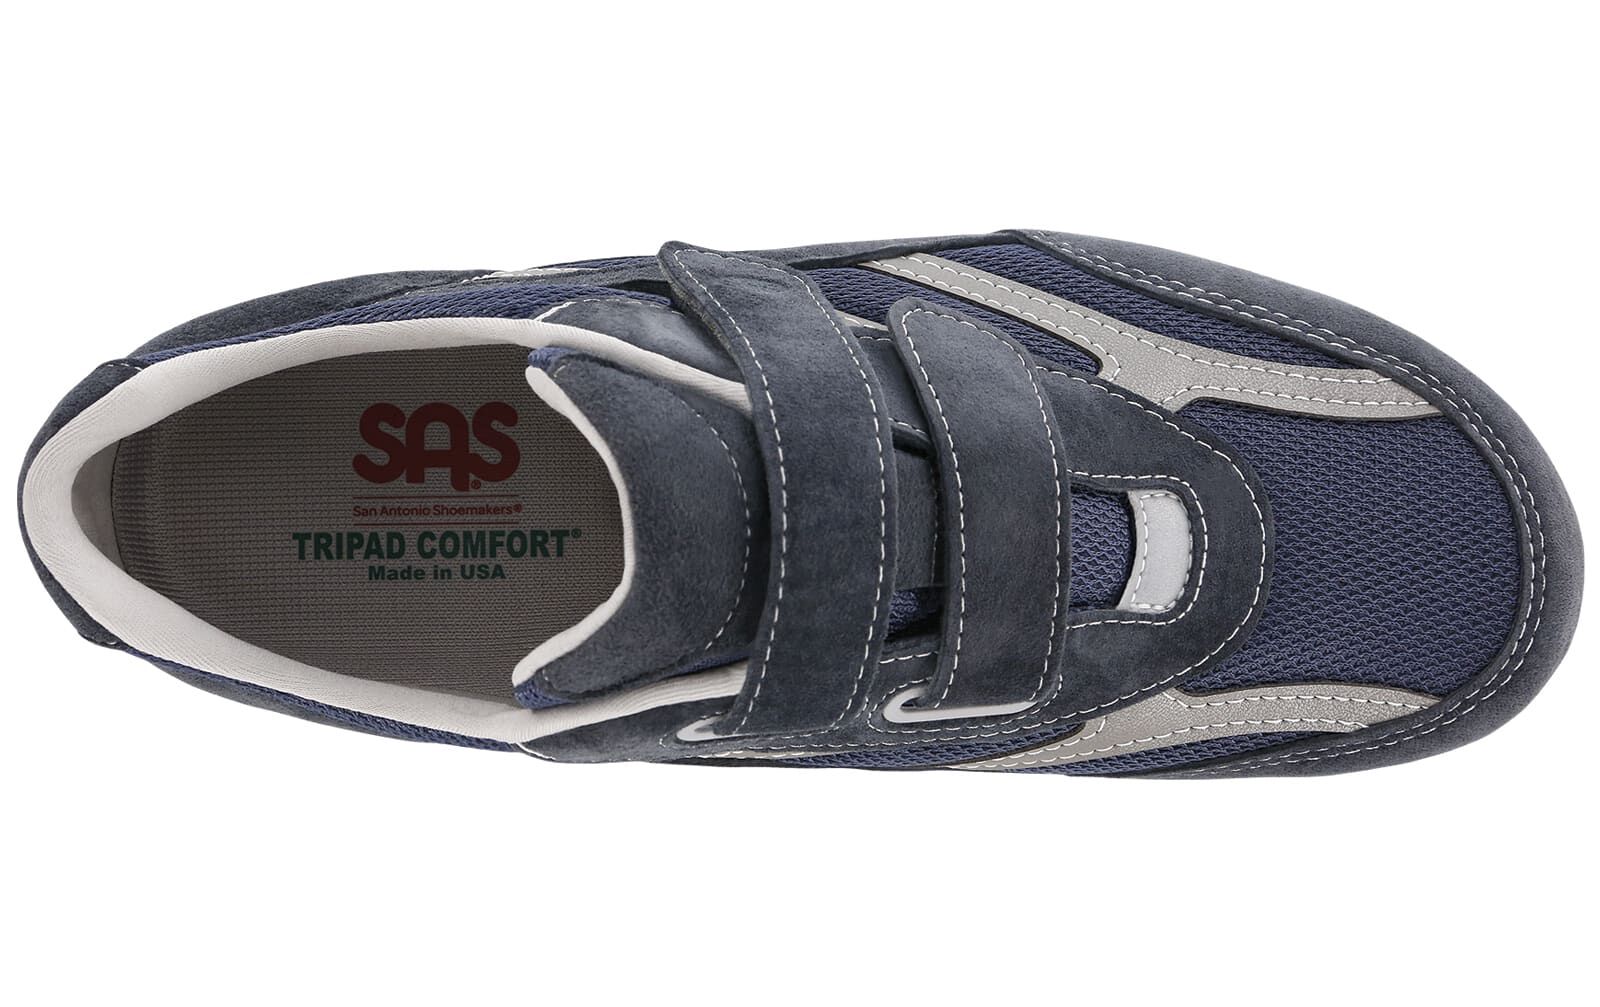 sas shoe repair